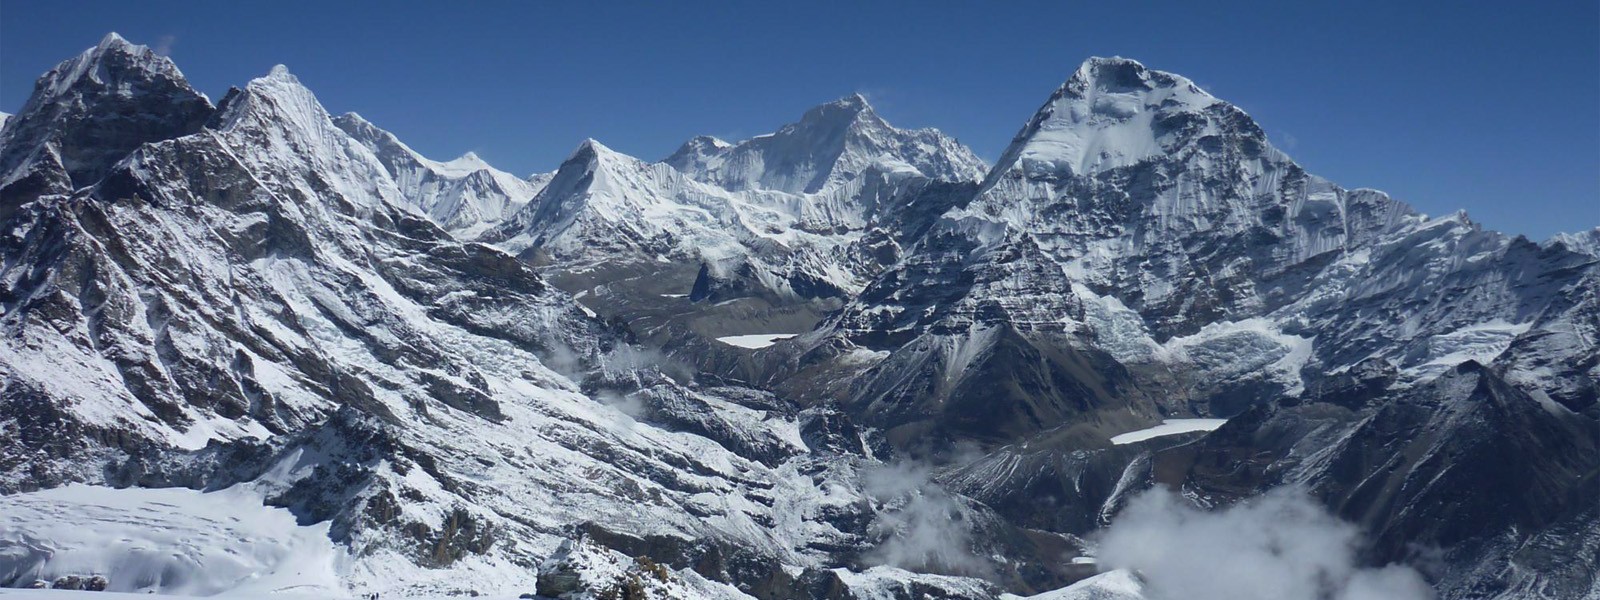 Mera Peak climbing with Sherpani Col Pass Trekking